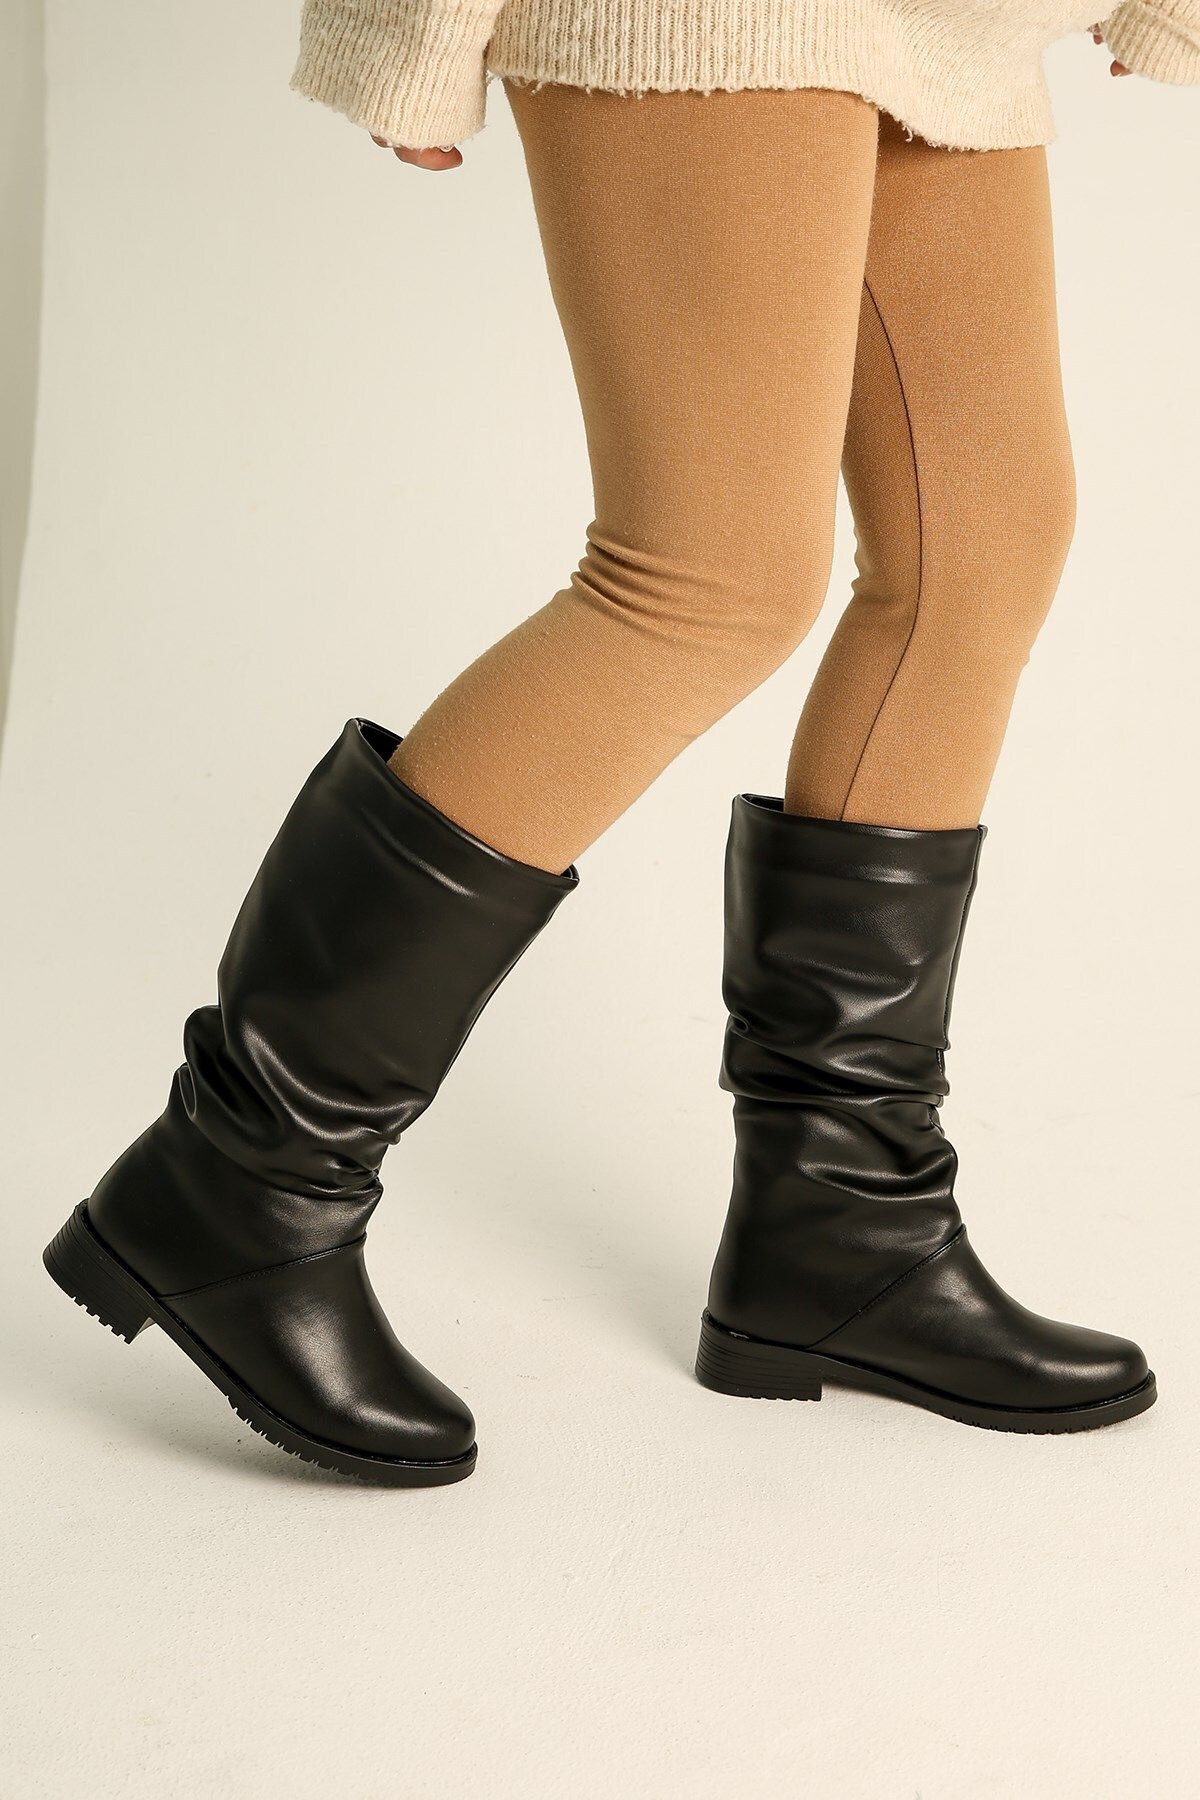 Ccway Kadın Körüklü Çizme Siyah Cilt